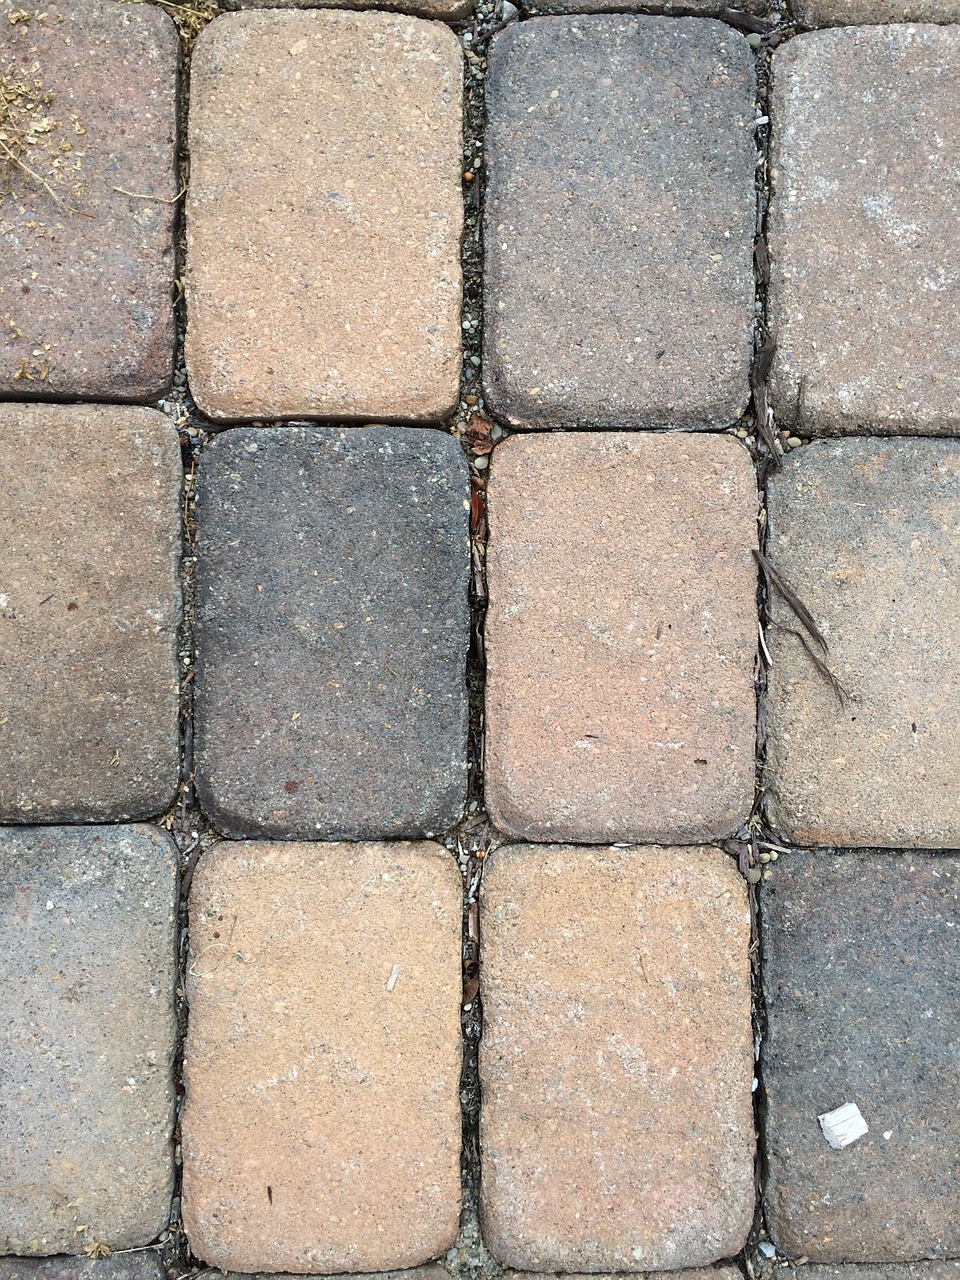 brick stone path free photo